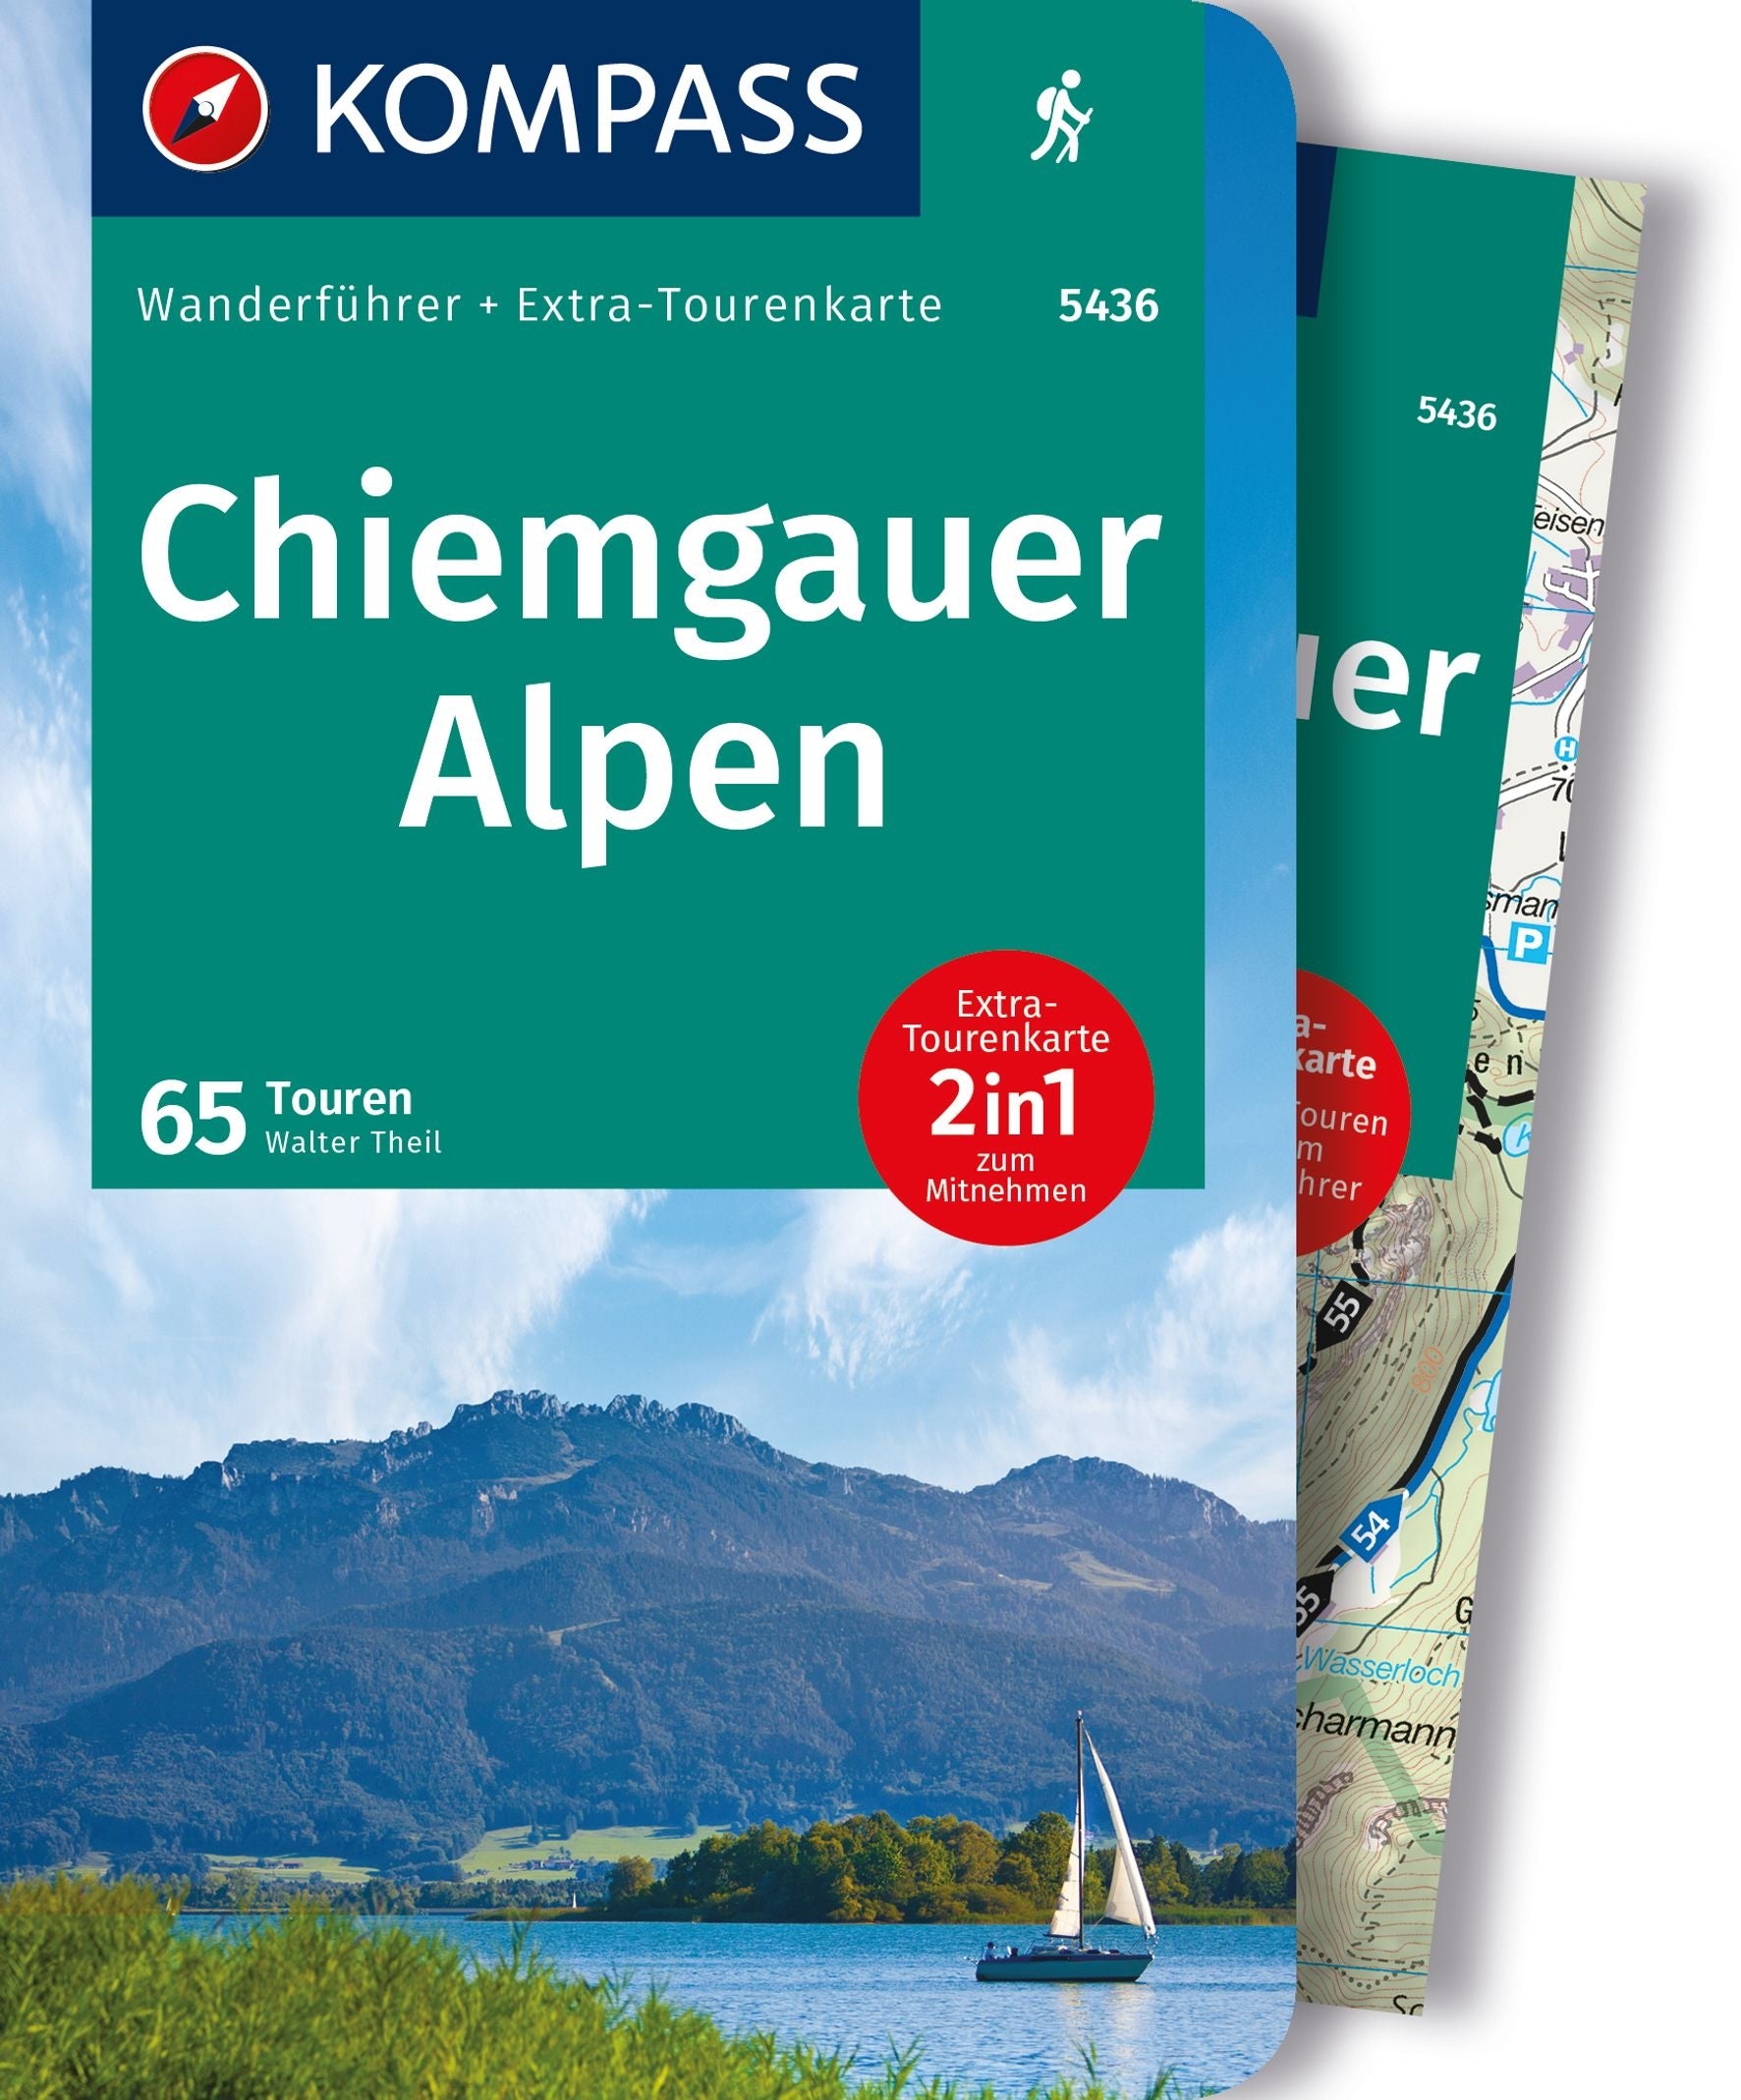 Chiemgauer Alpen, Wanderführer mit Extra-Tourenkarte 1:35.000 - Kompass Wanderführer